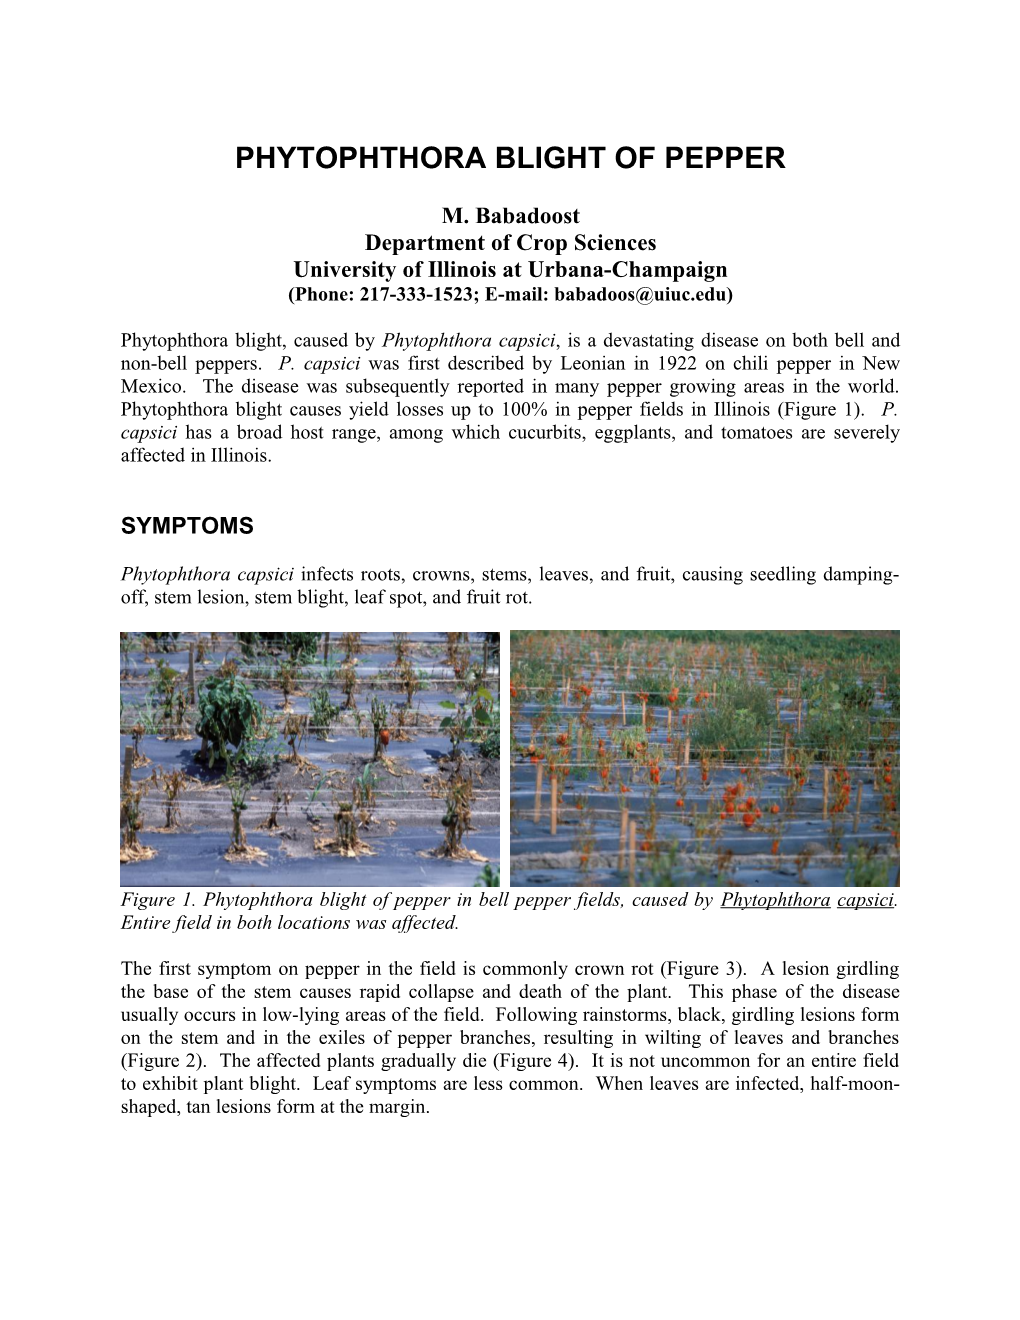 Phytophthora Blight of Pepper